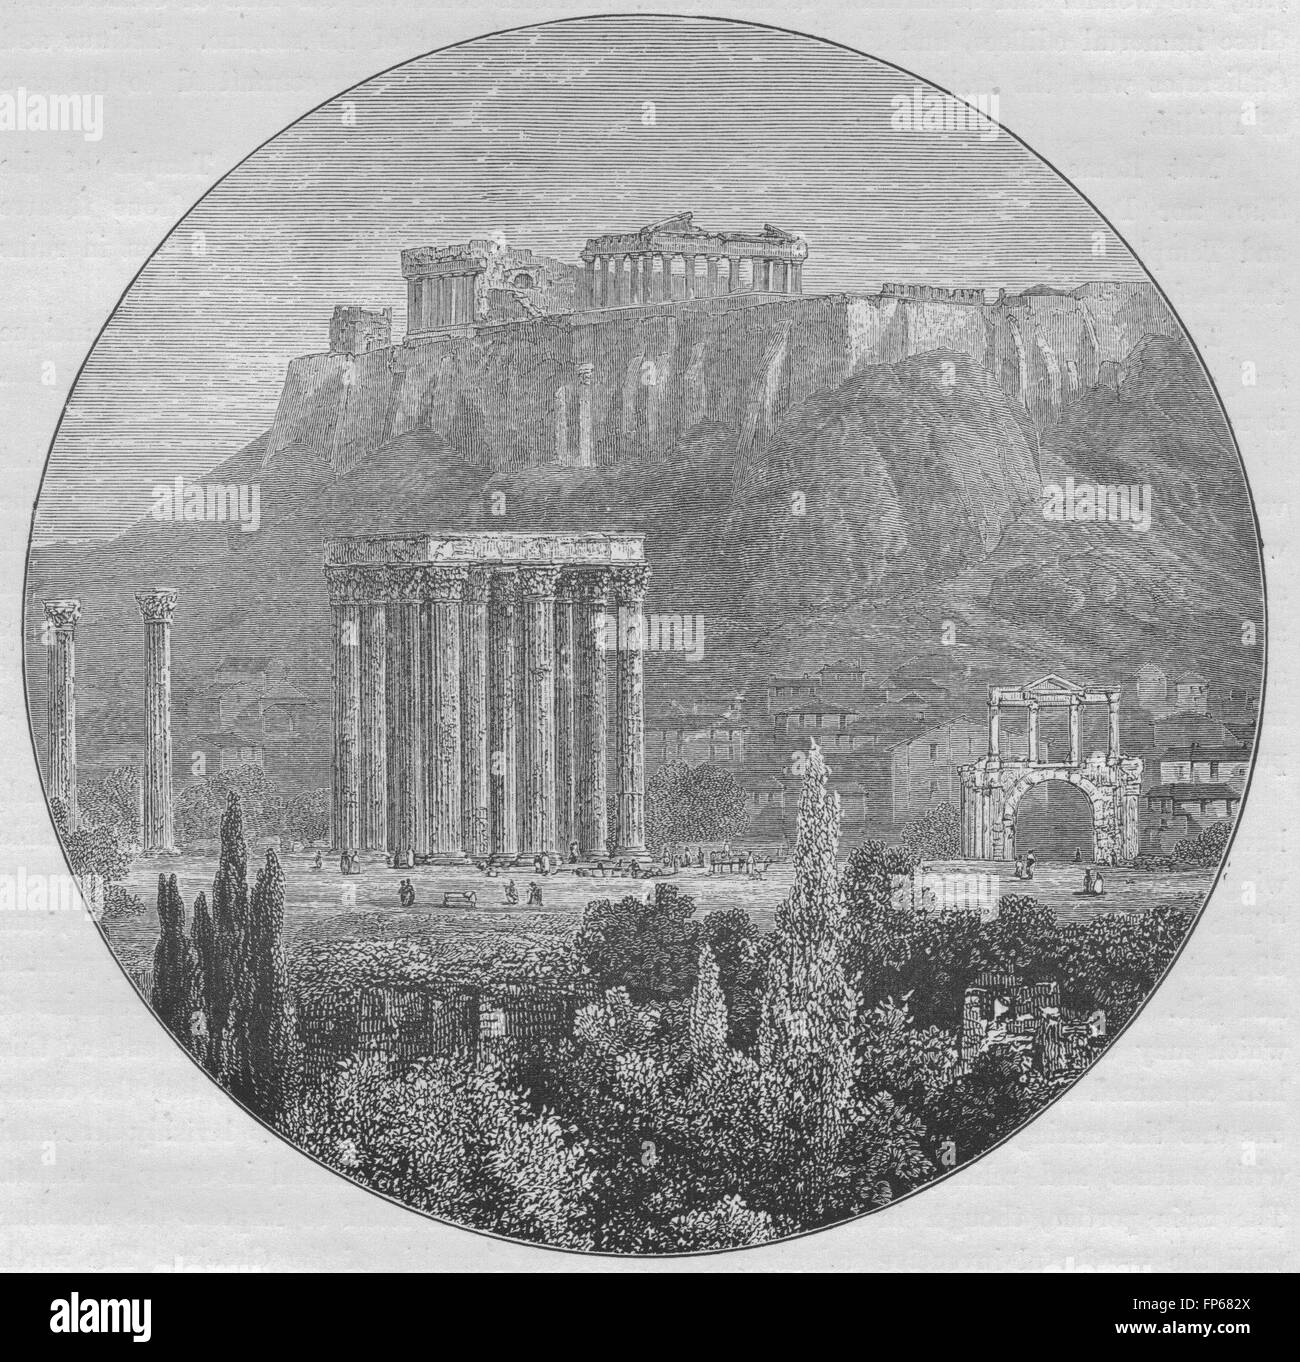 Atene: l'Acropoli, la Porta di Adriano, e le rovine del tempio di Giove, 1882 Foto Stock